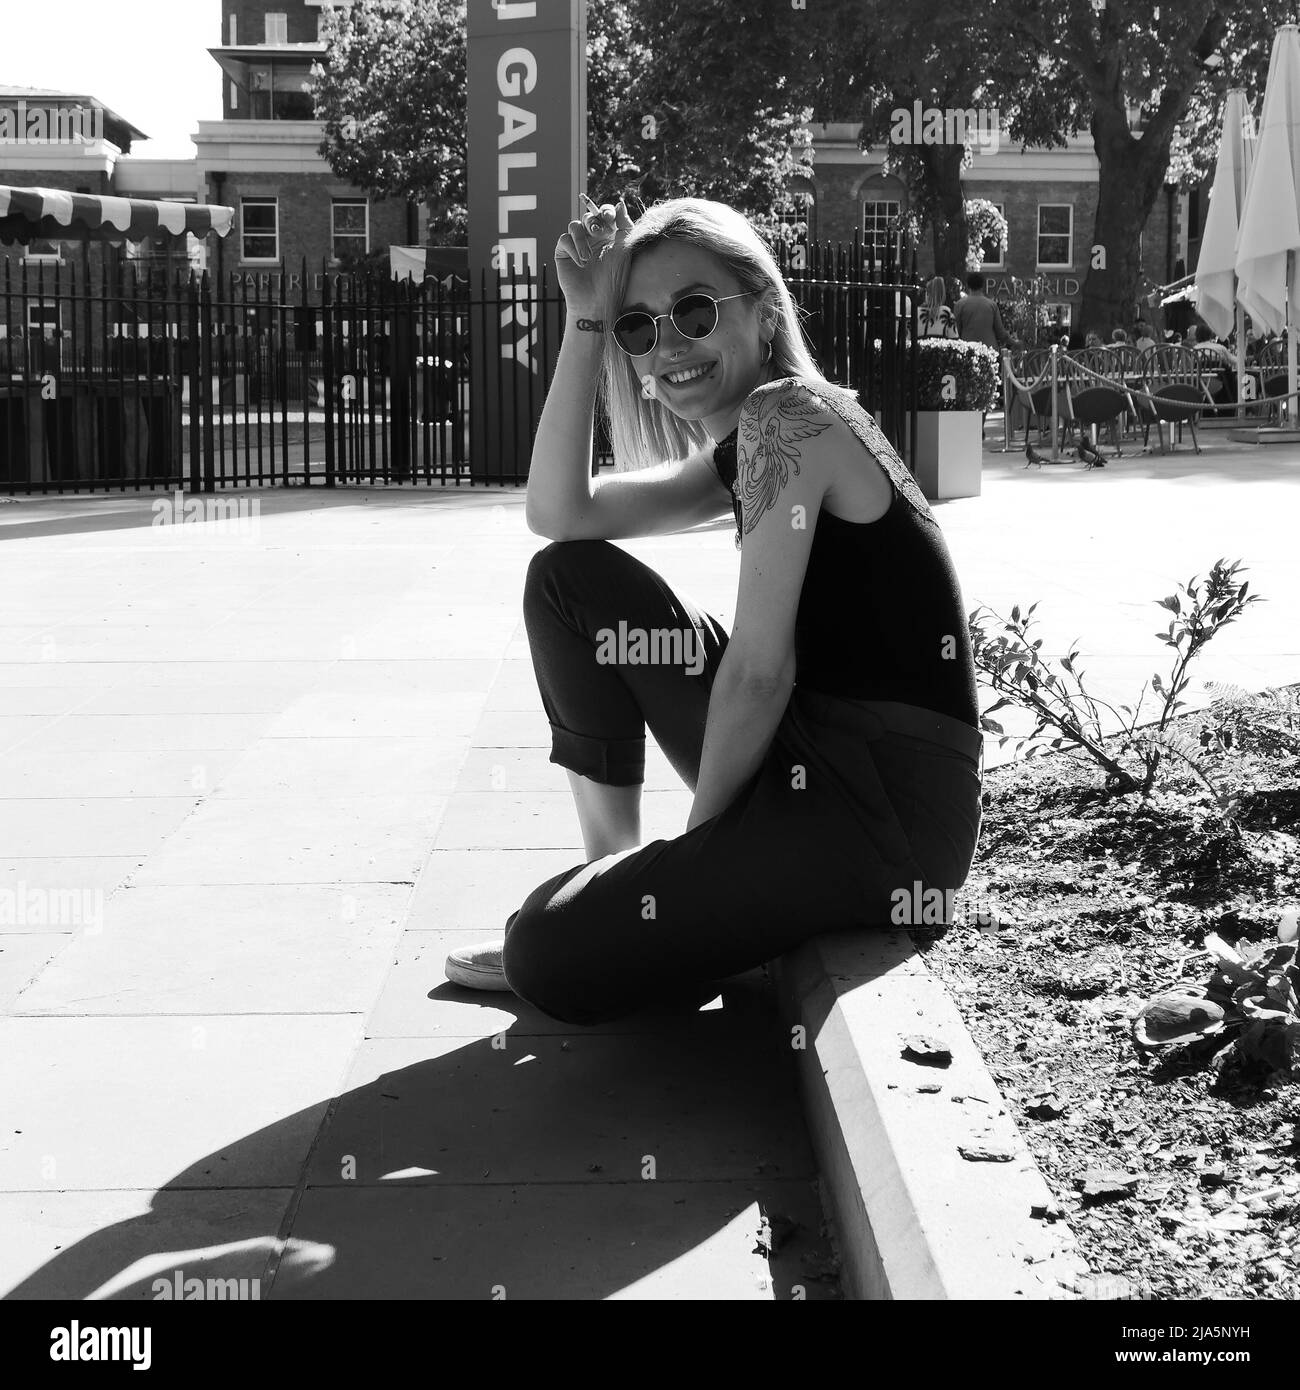 Jolie dame avec des tatouages, le perçage du nez et des lunettes de soleil se trouve sur une pierre de trottoir, sourit et fume. Duke of York Square, Chelsea, Londres. Monochrome. Banque D'Images